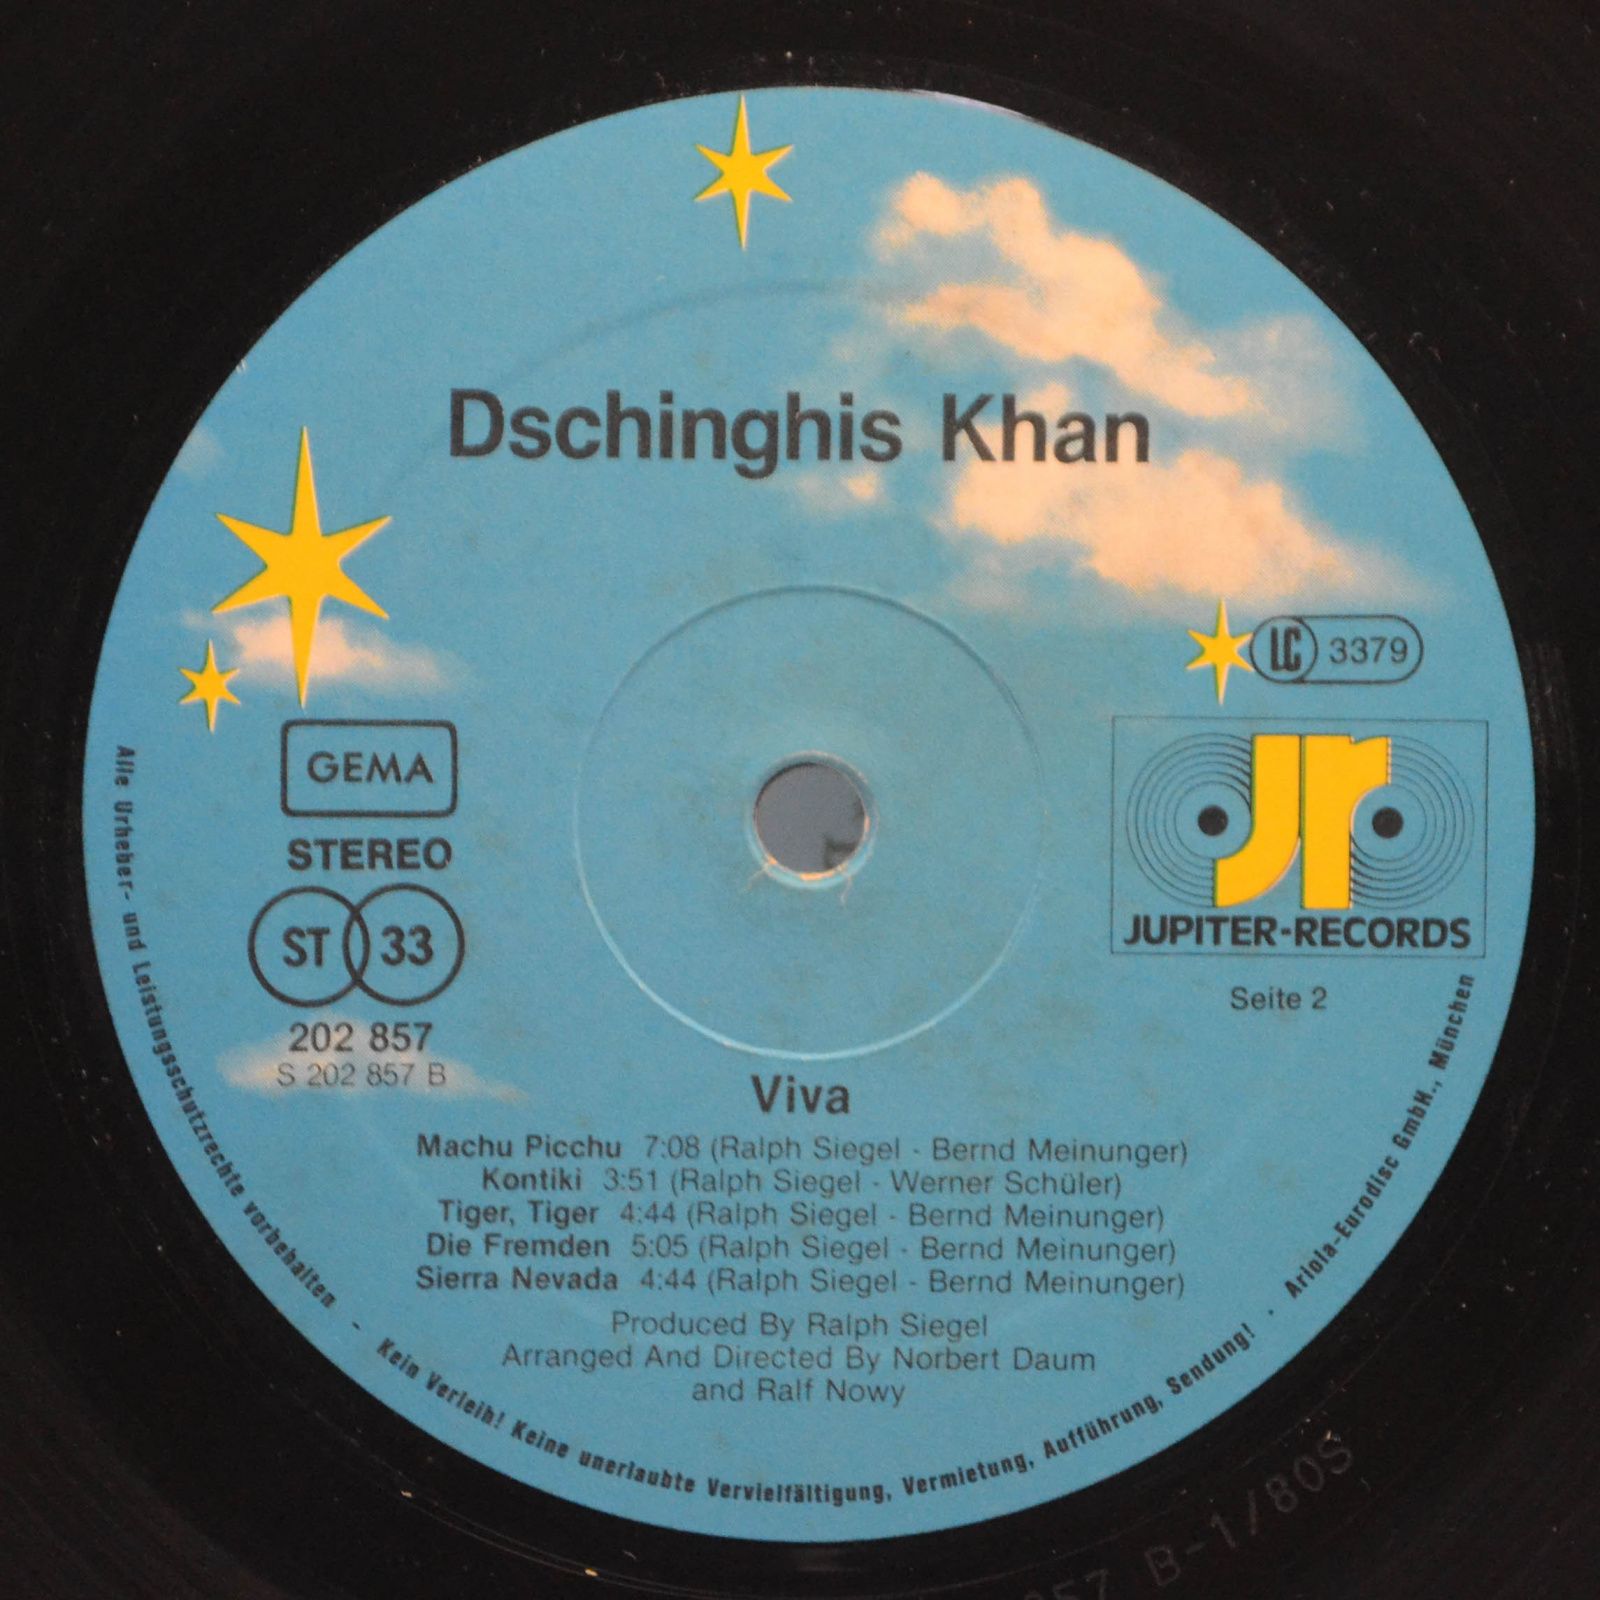 Dschinghis Khan — Viva, 1980